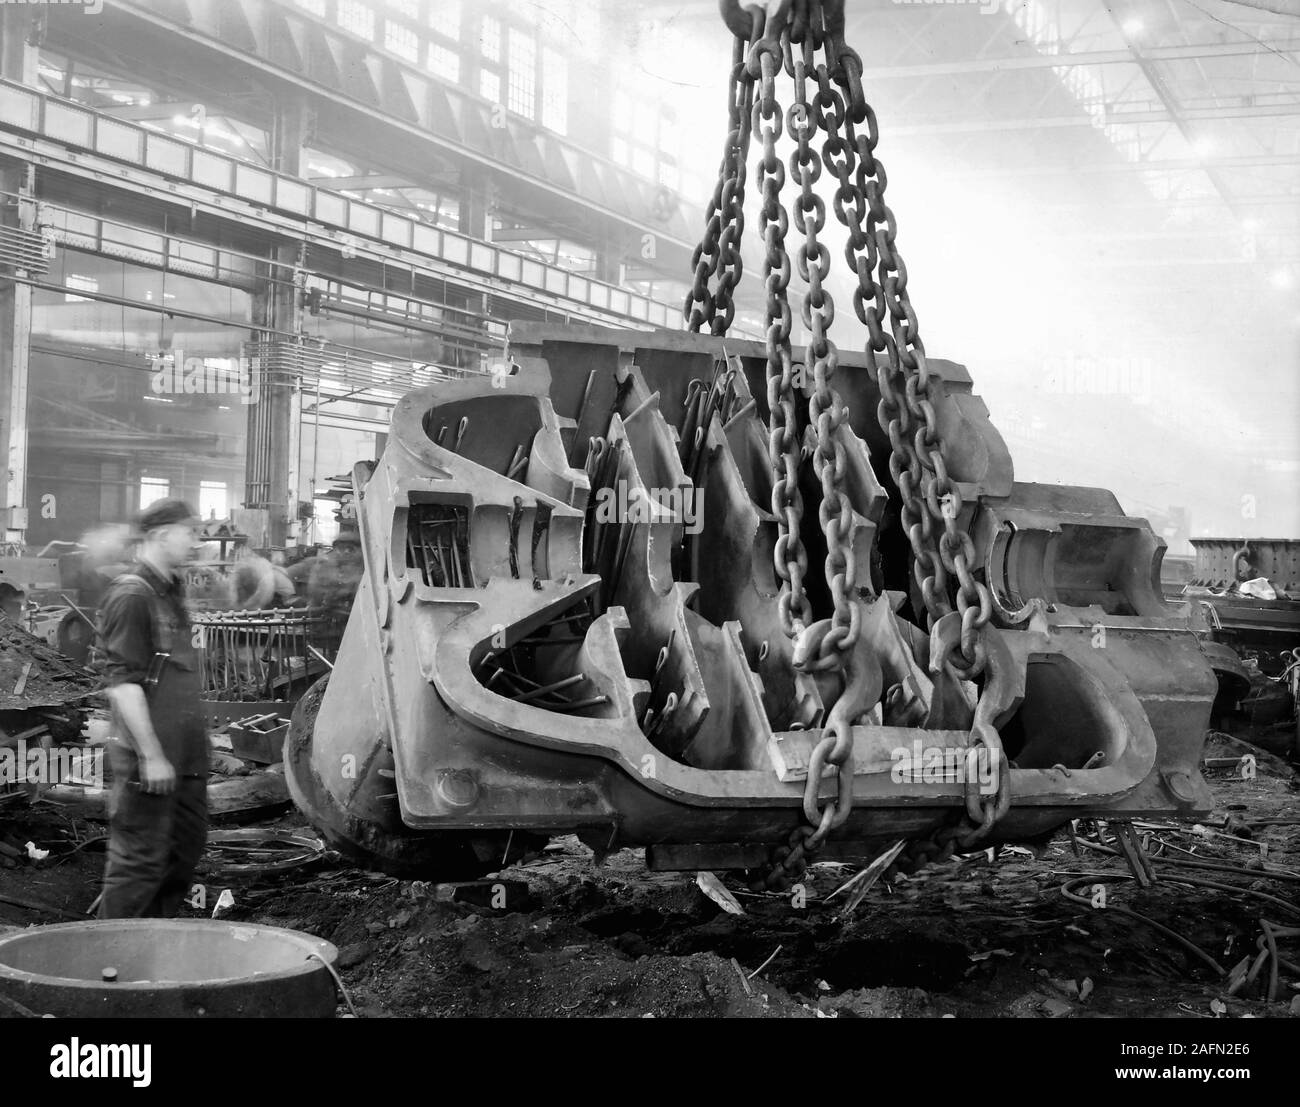 Un ALLIS CHALMERS lavoratore orologi come una pesante gru solleva il pezzo fuso di metallo sul piano della fabbrica, ca. 1930. Foto Stock